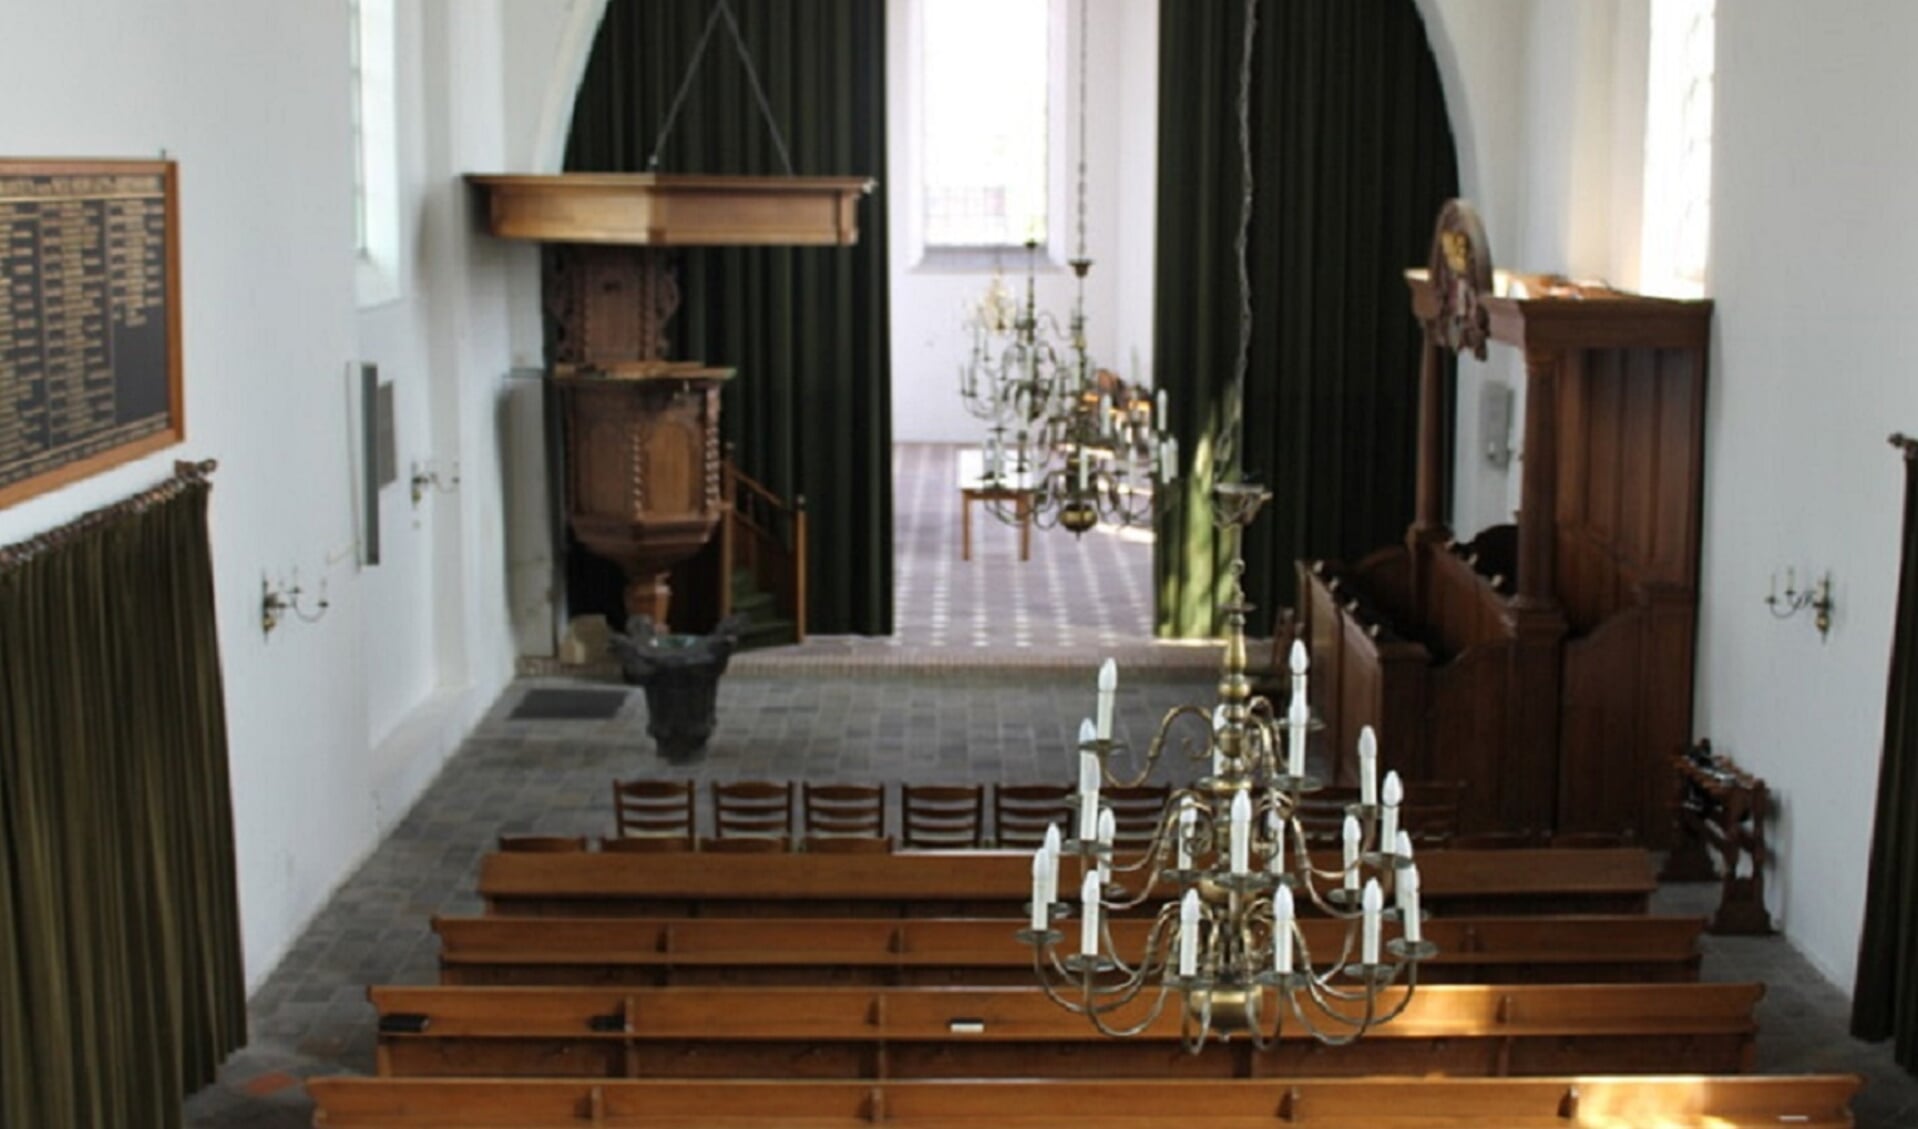 De Hervormde Kerk in IJzendoorn is regelmatig op zaterdagmiddag van 14.00 tot 16.00 uur te bezichtigen.